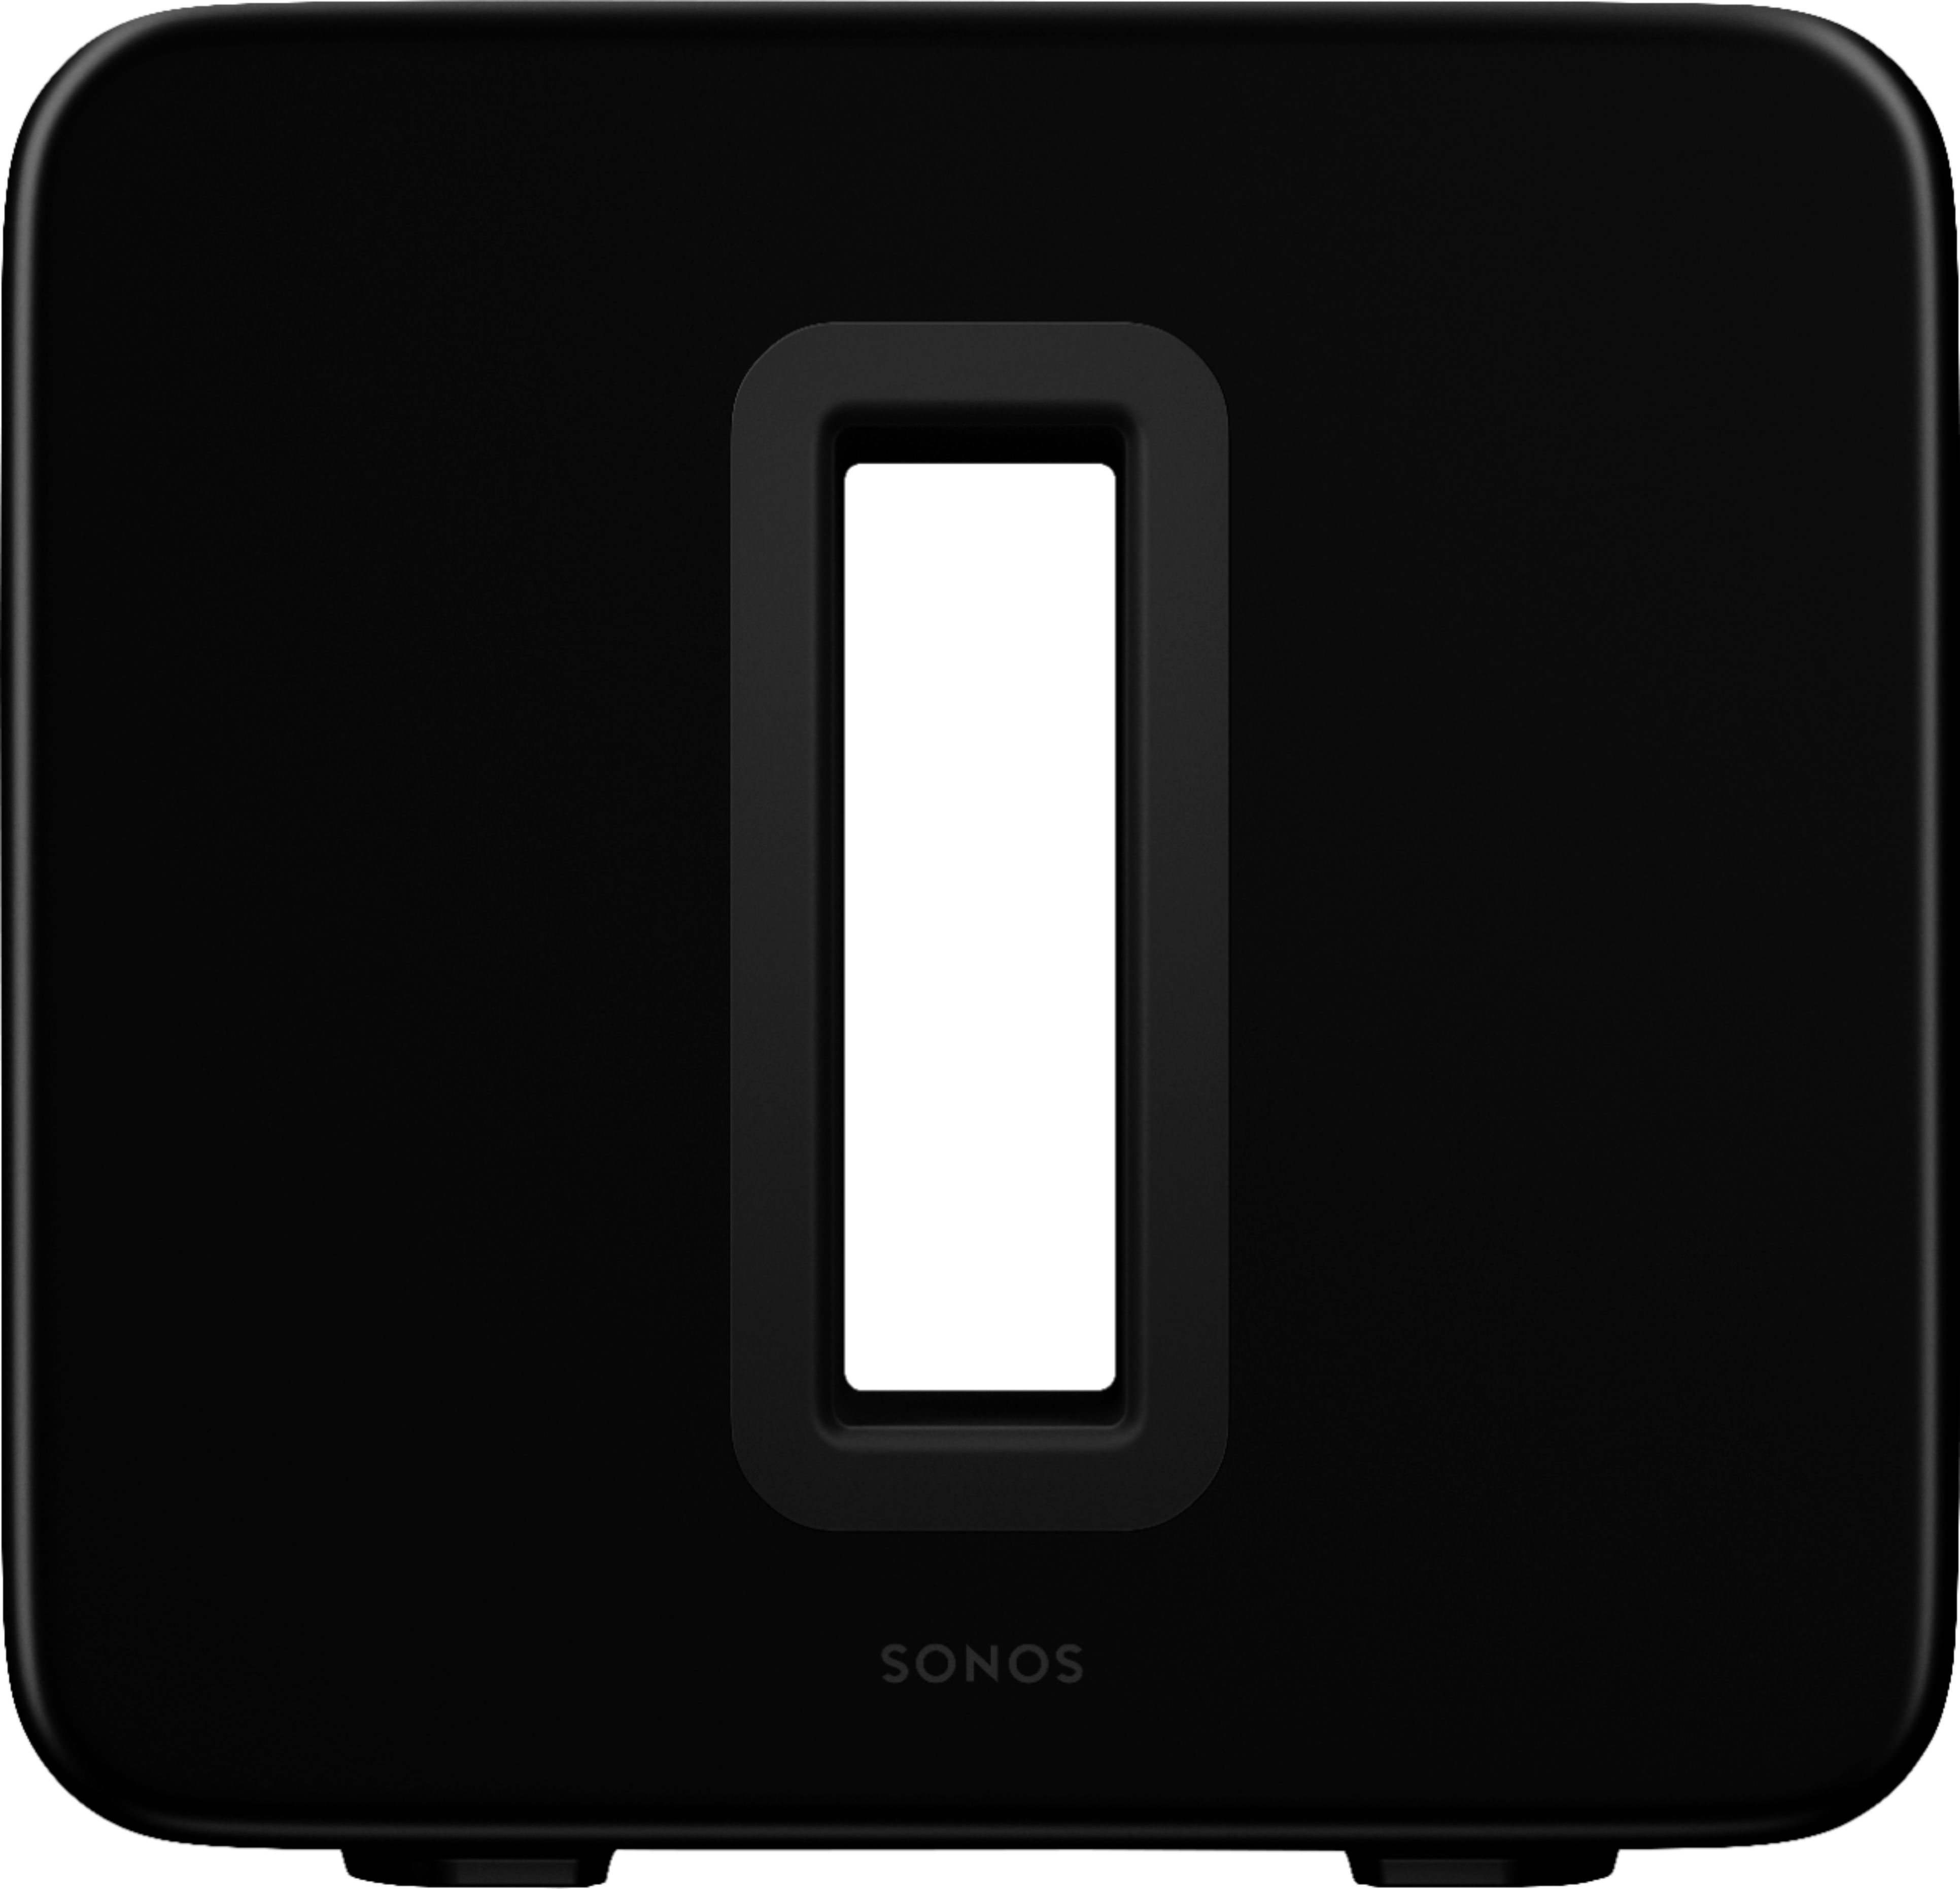 Best Sonos Geek Refurbished Sub (Gen 3) Wireless Subwoofer Black SUBG3US1BLK